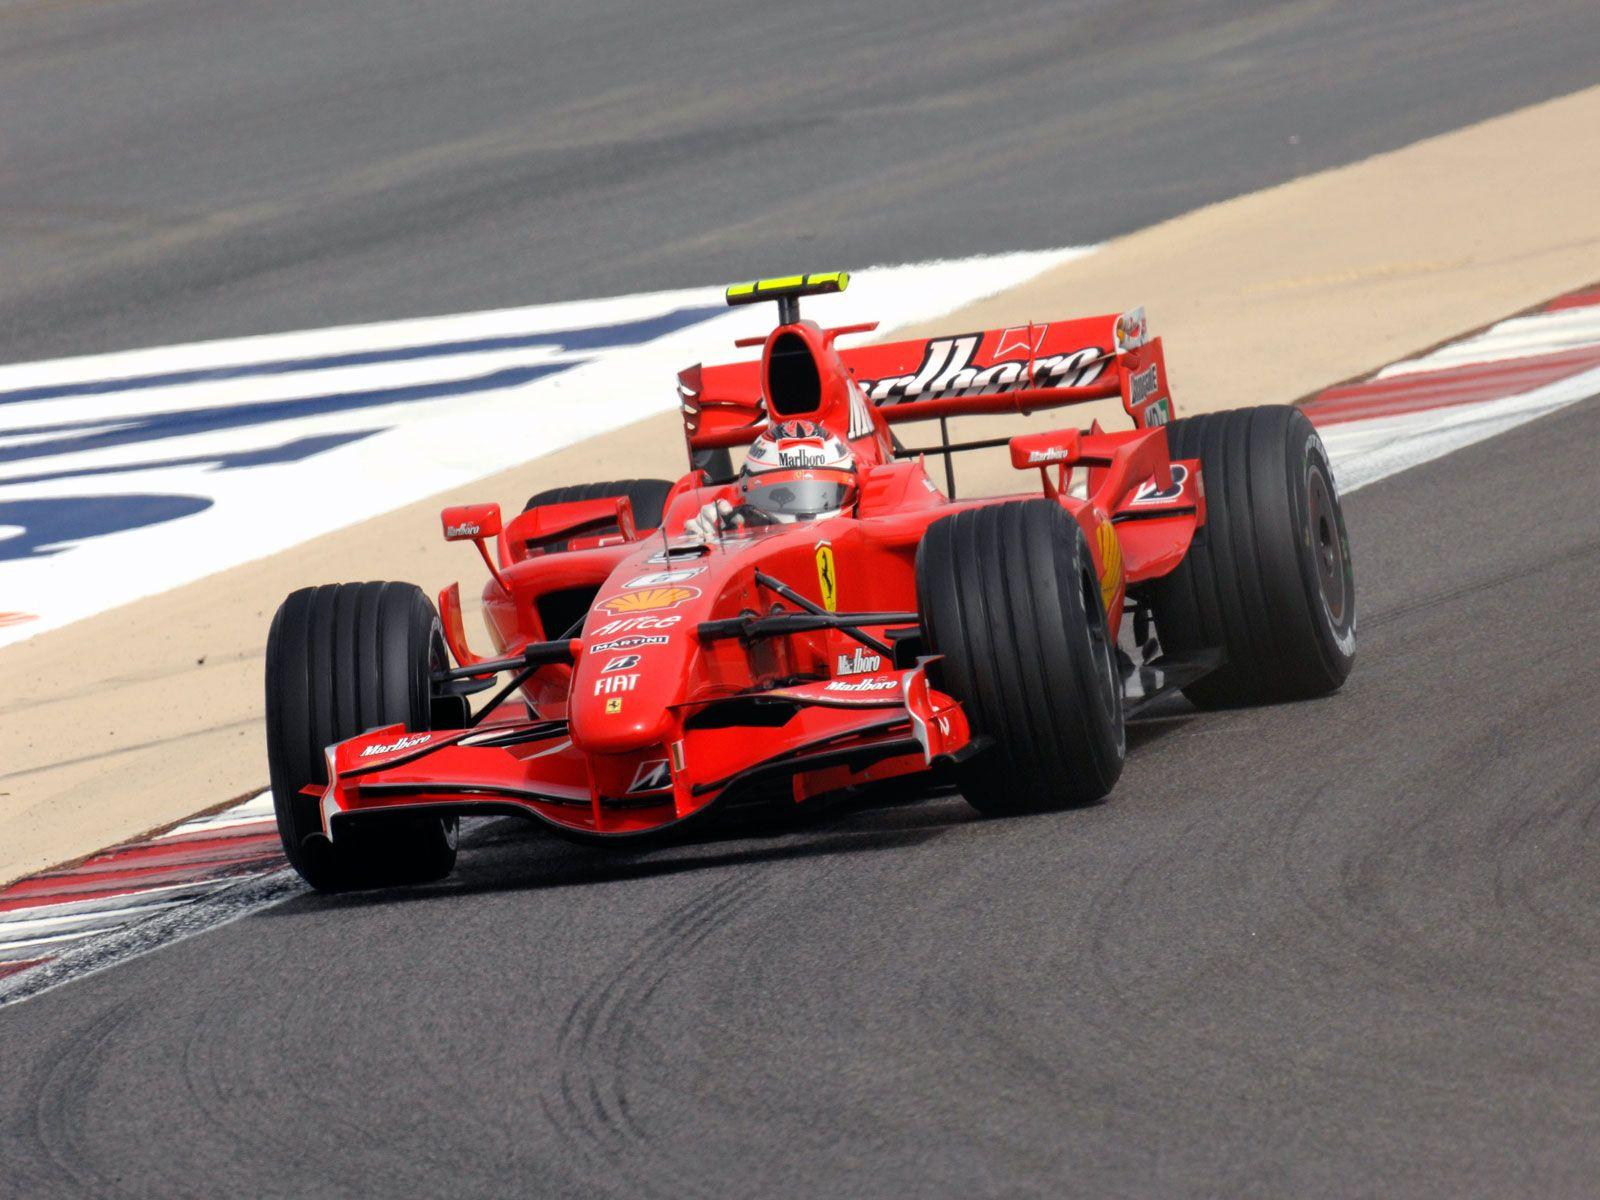 P1: Kimi Räikkönen (FIN) F2007 Points #motorsport